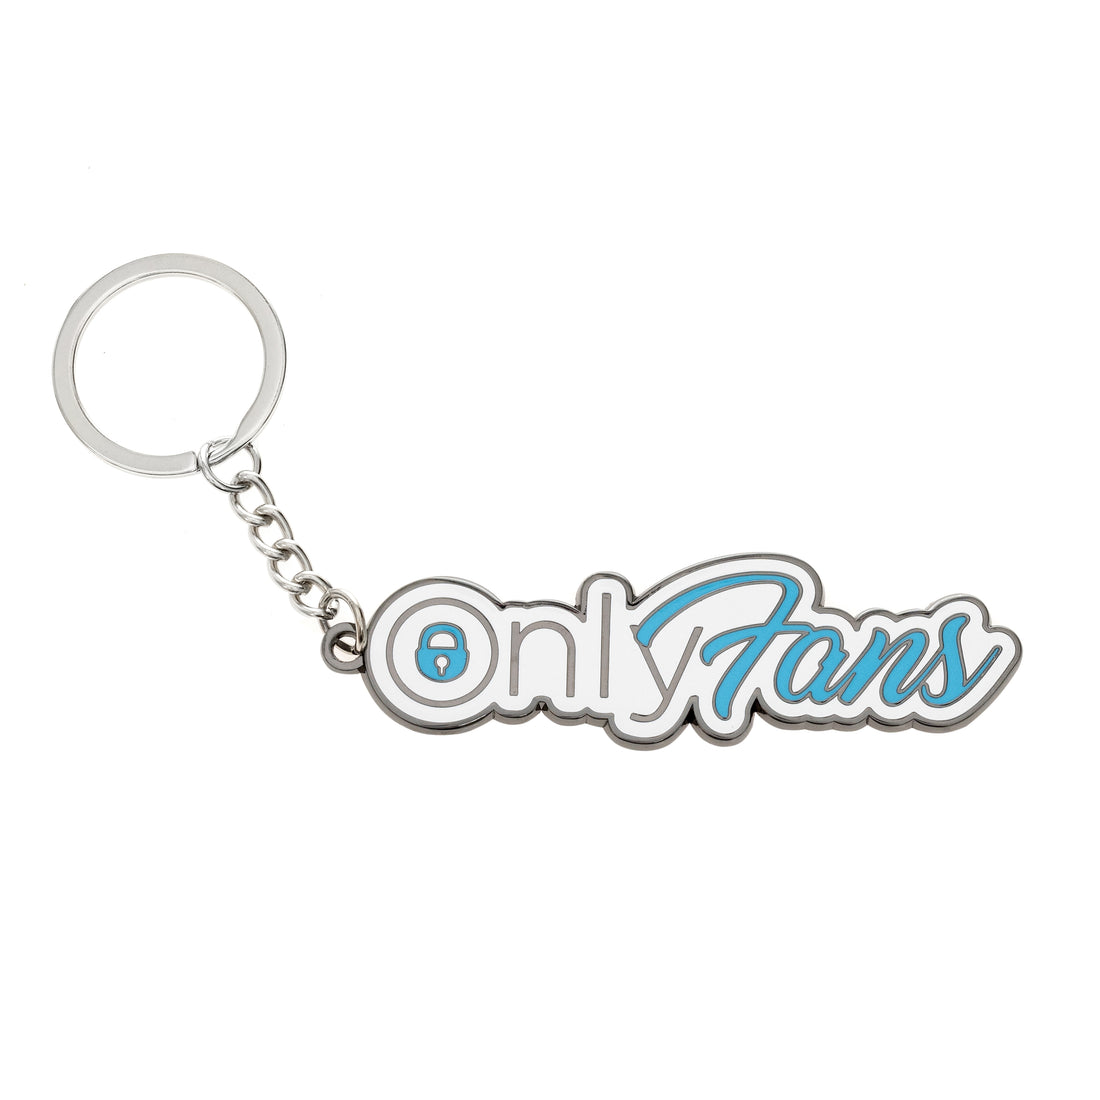 OnlyFans Keychain